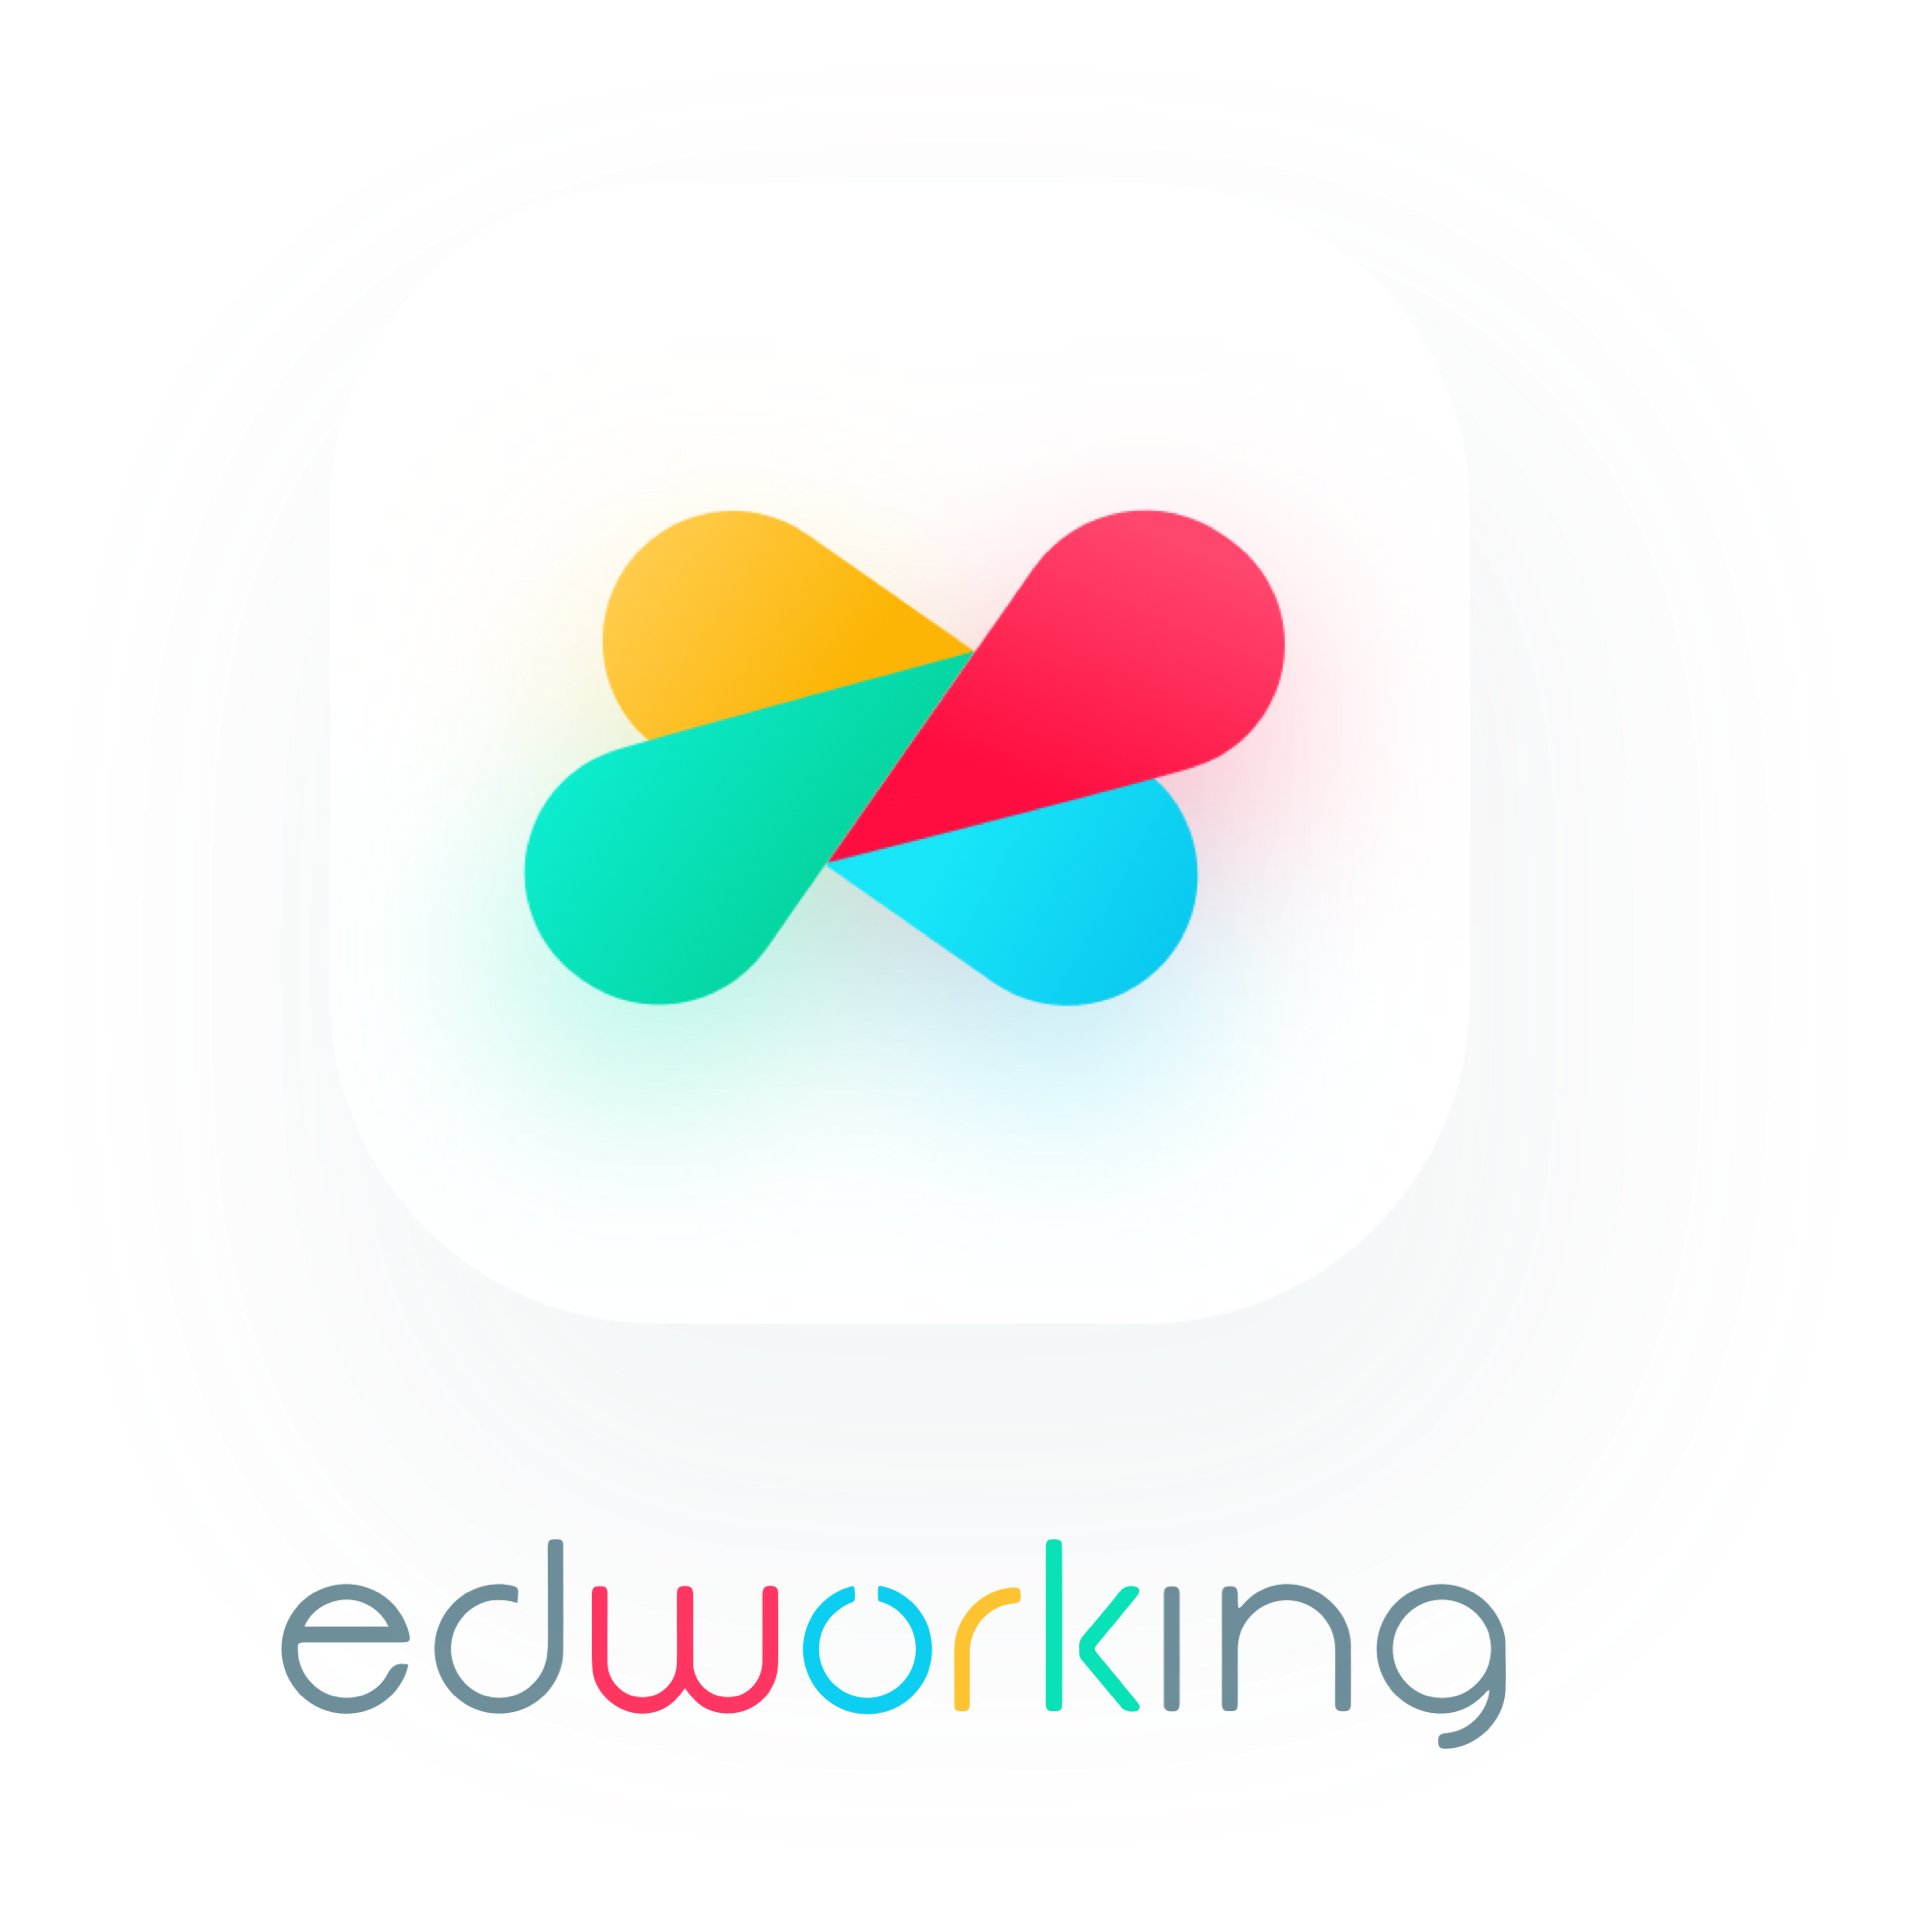 Edworking Ltd